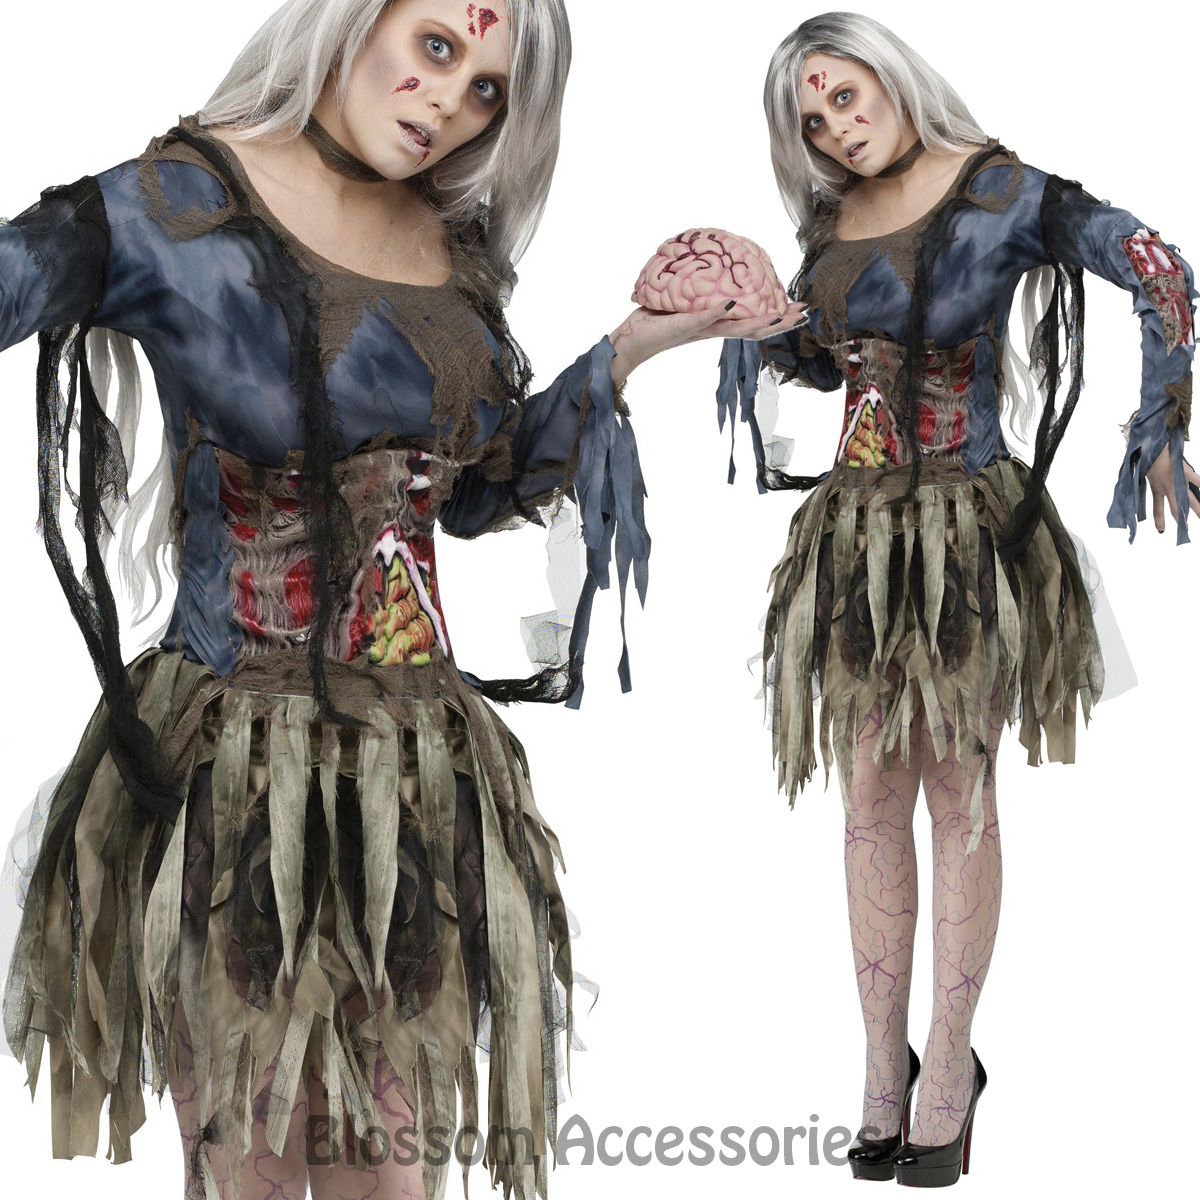 Horror Halloween KostÃ¼me Genial Cl986 Zombie Costume Womens Walking Dead Ghost Horror